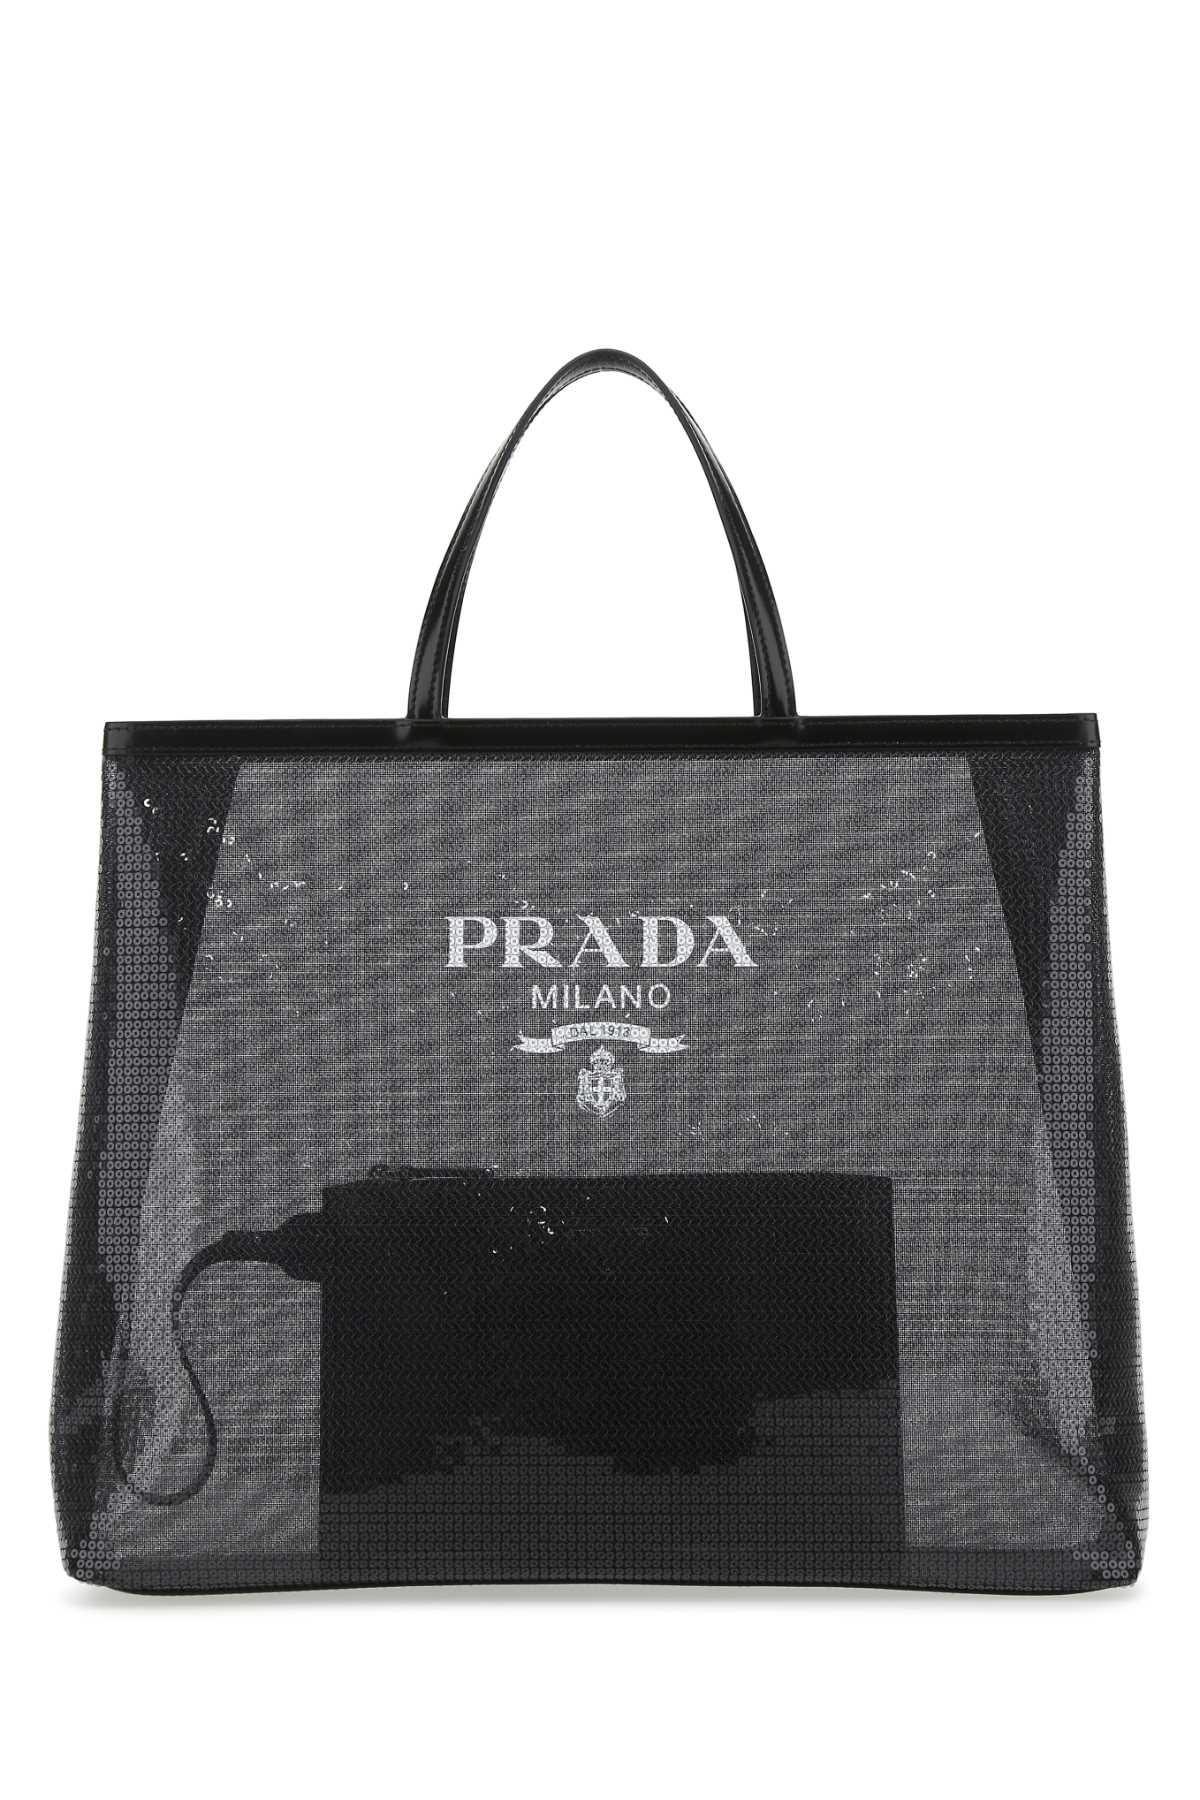 Prada Logo Detailed Top Handle Bag